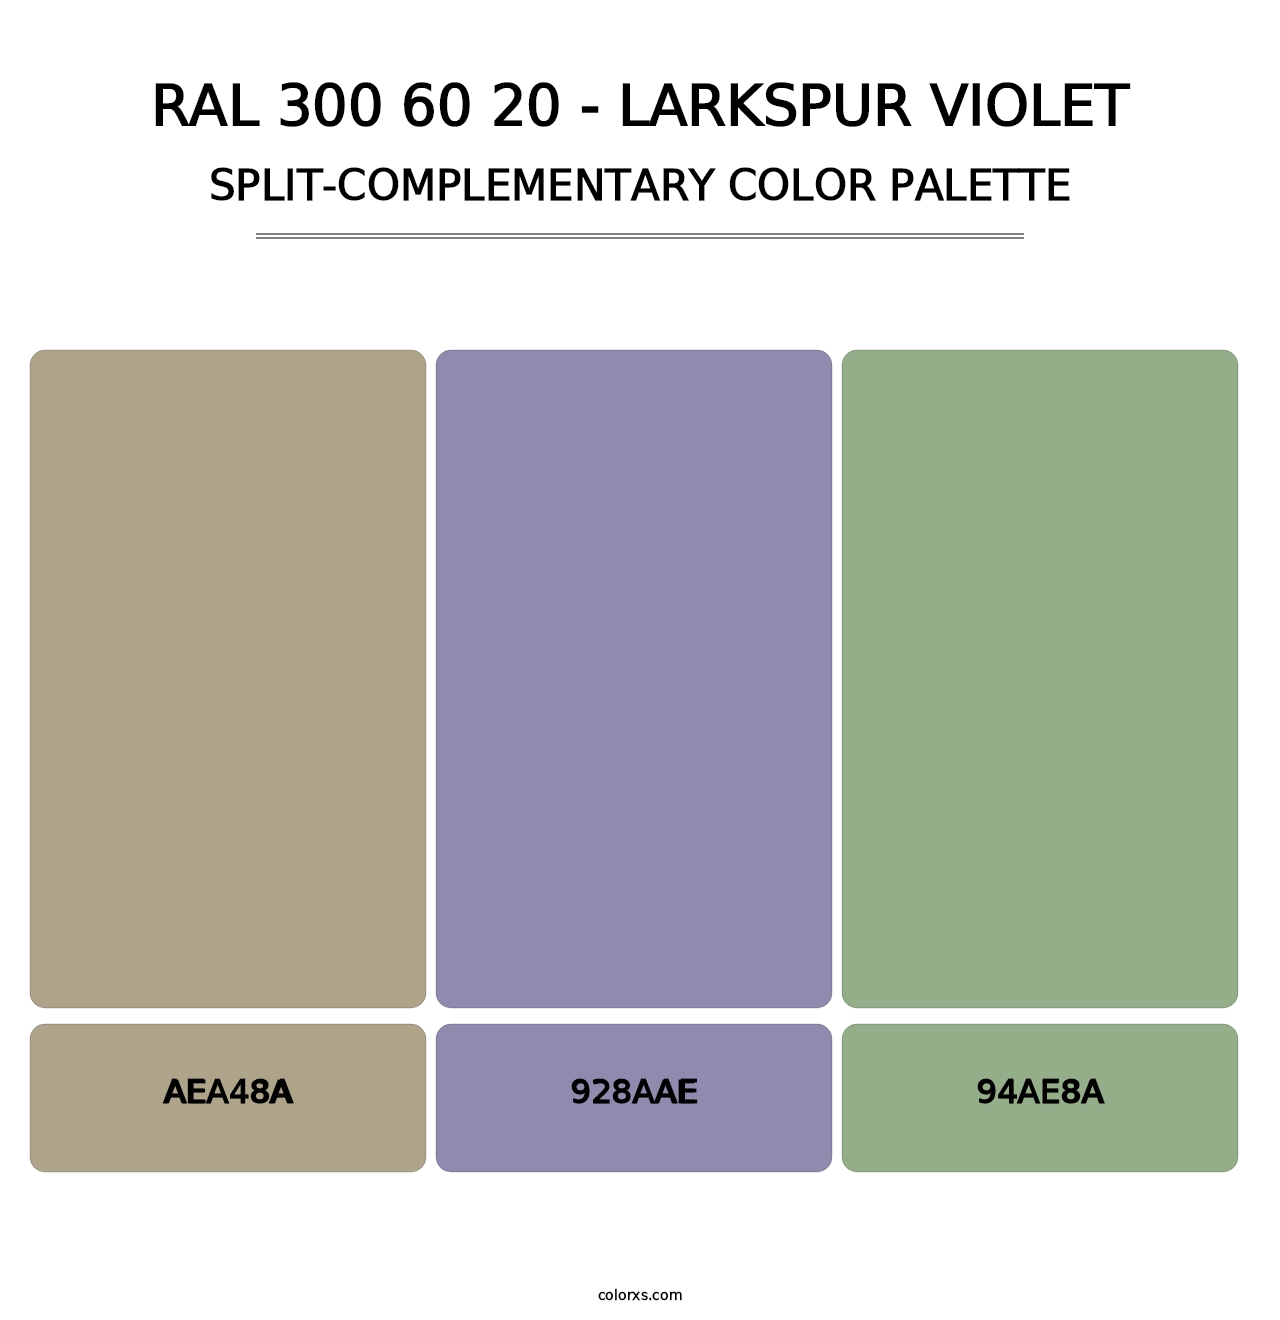 RAL 300 60 20 - Larkspur Violet - Split-Complementary Color Palette